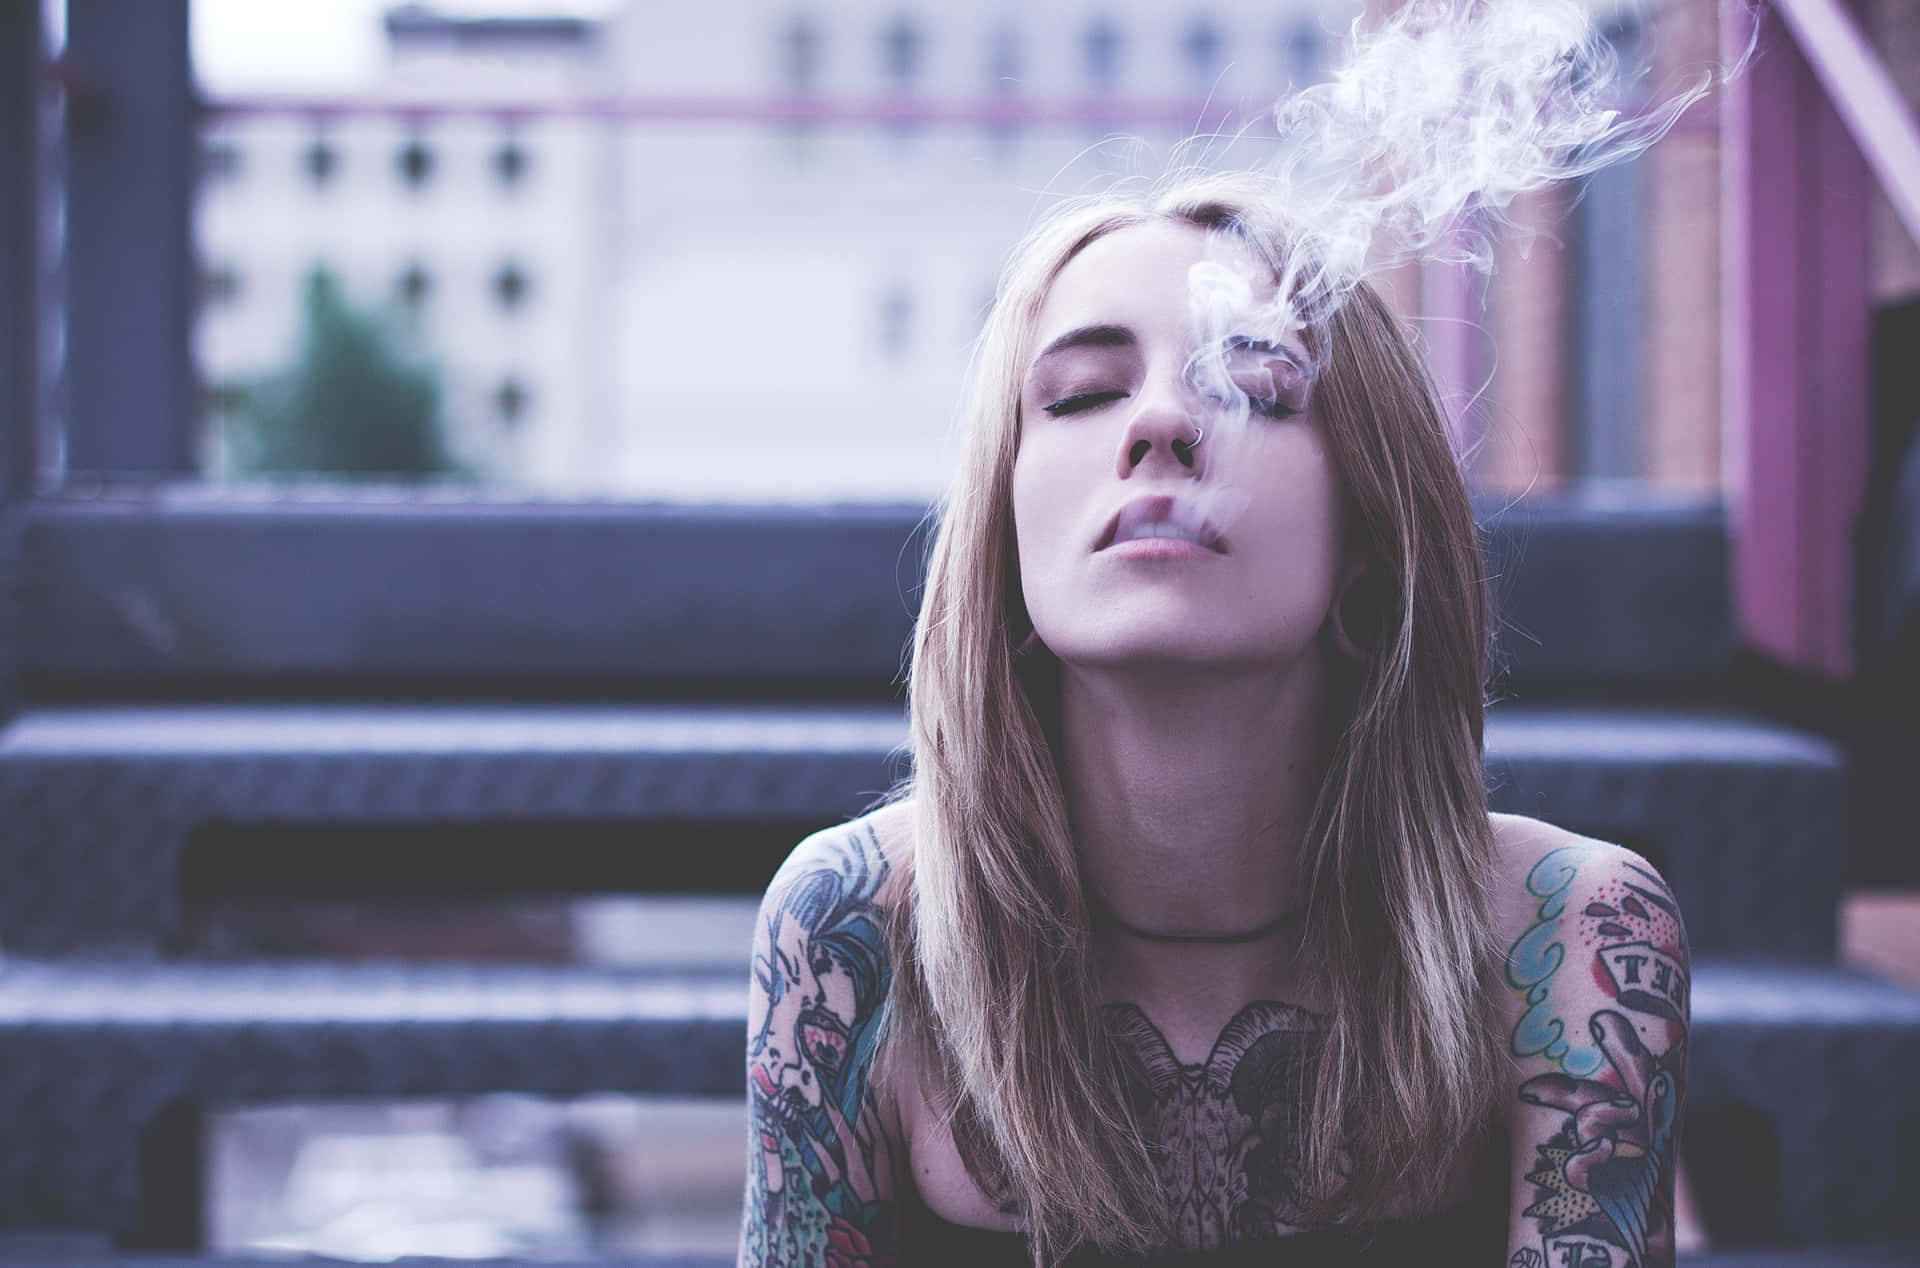 Tattooed Girl Smoking Outside